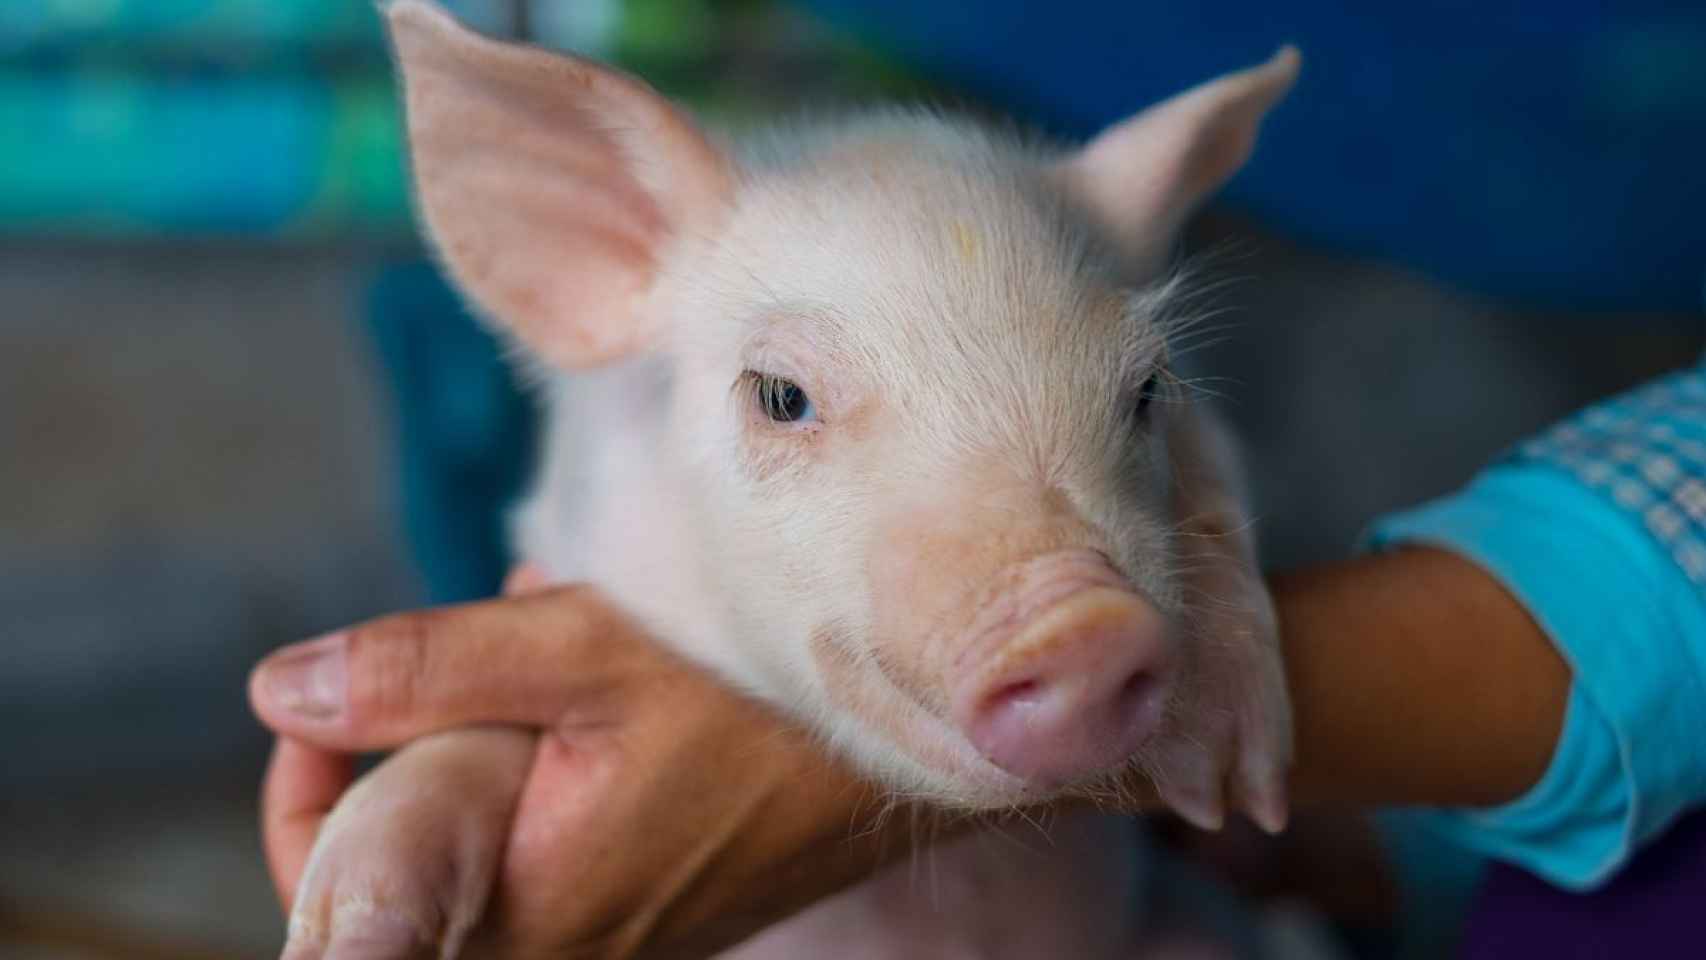 El sector porcino ha sido objeto de esta investigación. Foto: IRTA.